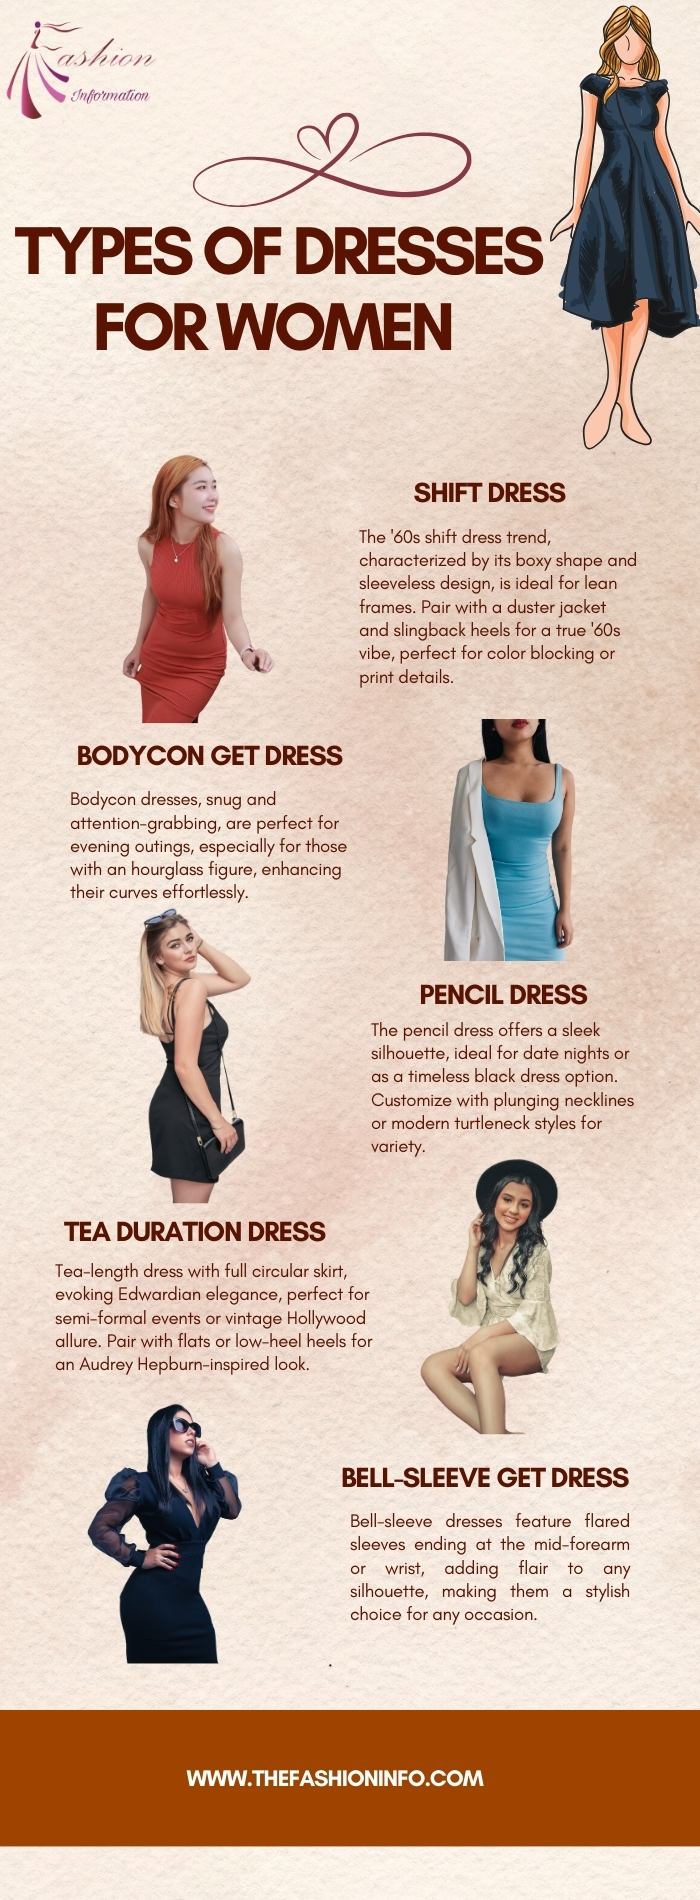 Types of dresses for women 